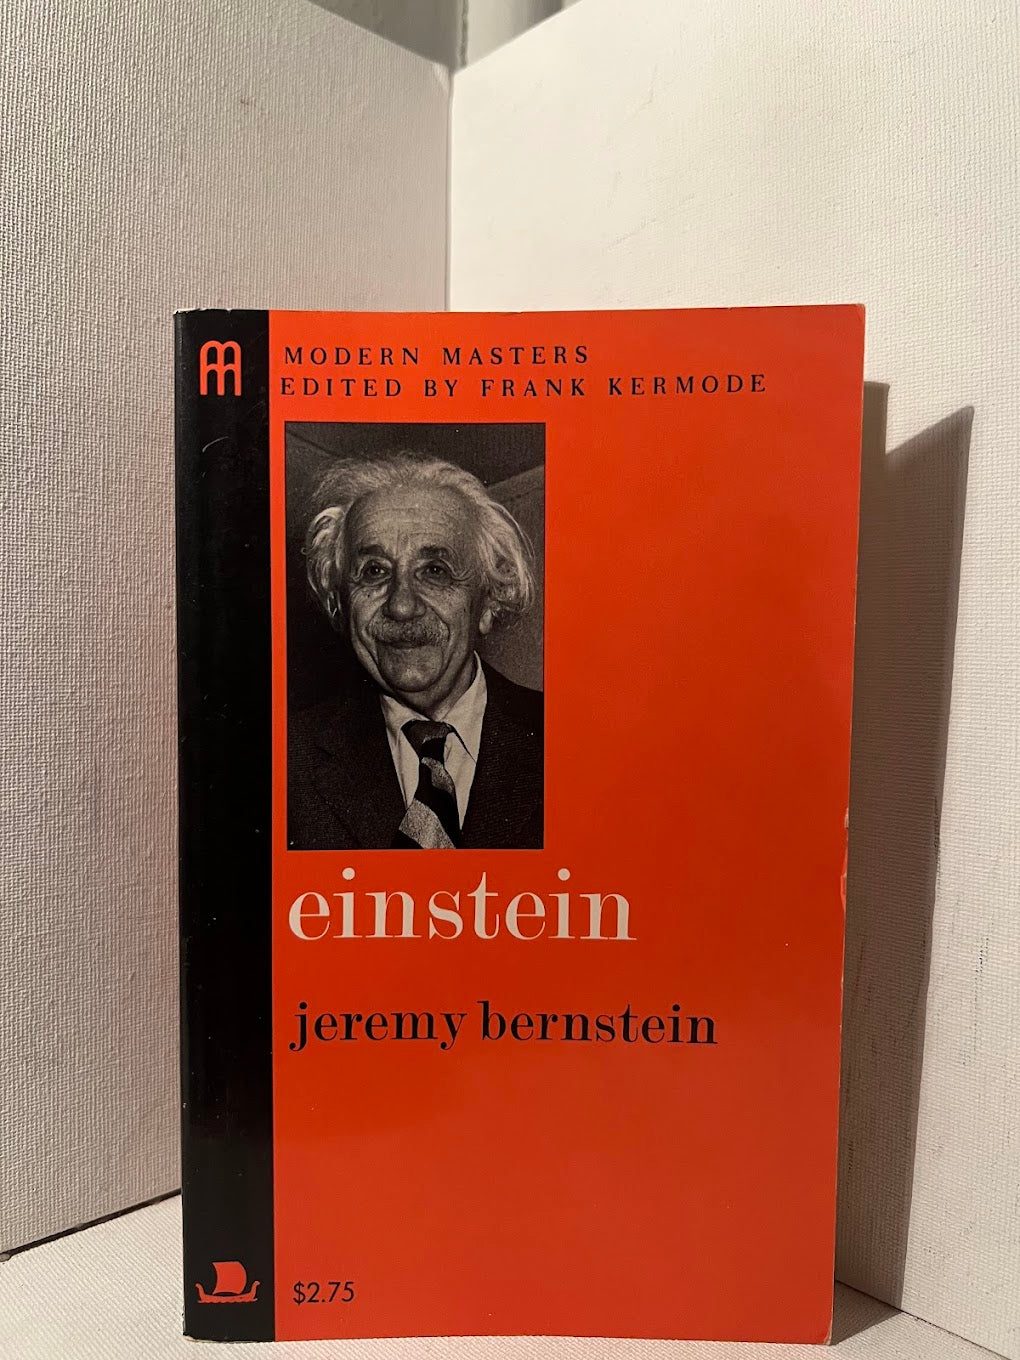 Einstein by Jeremy Bernstein